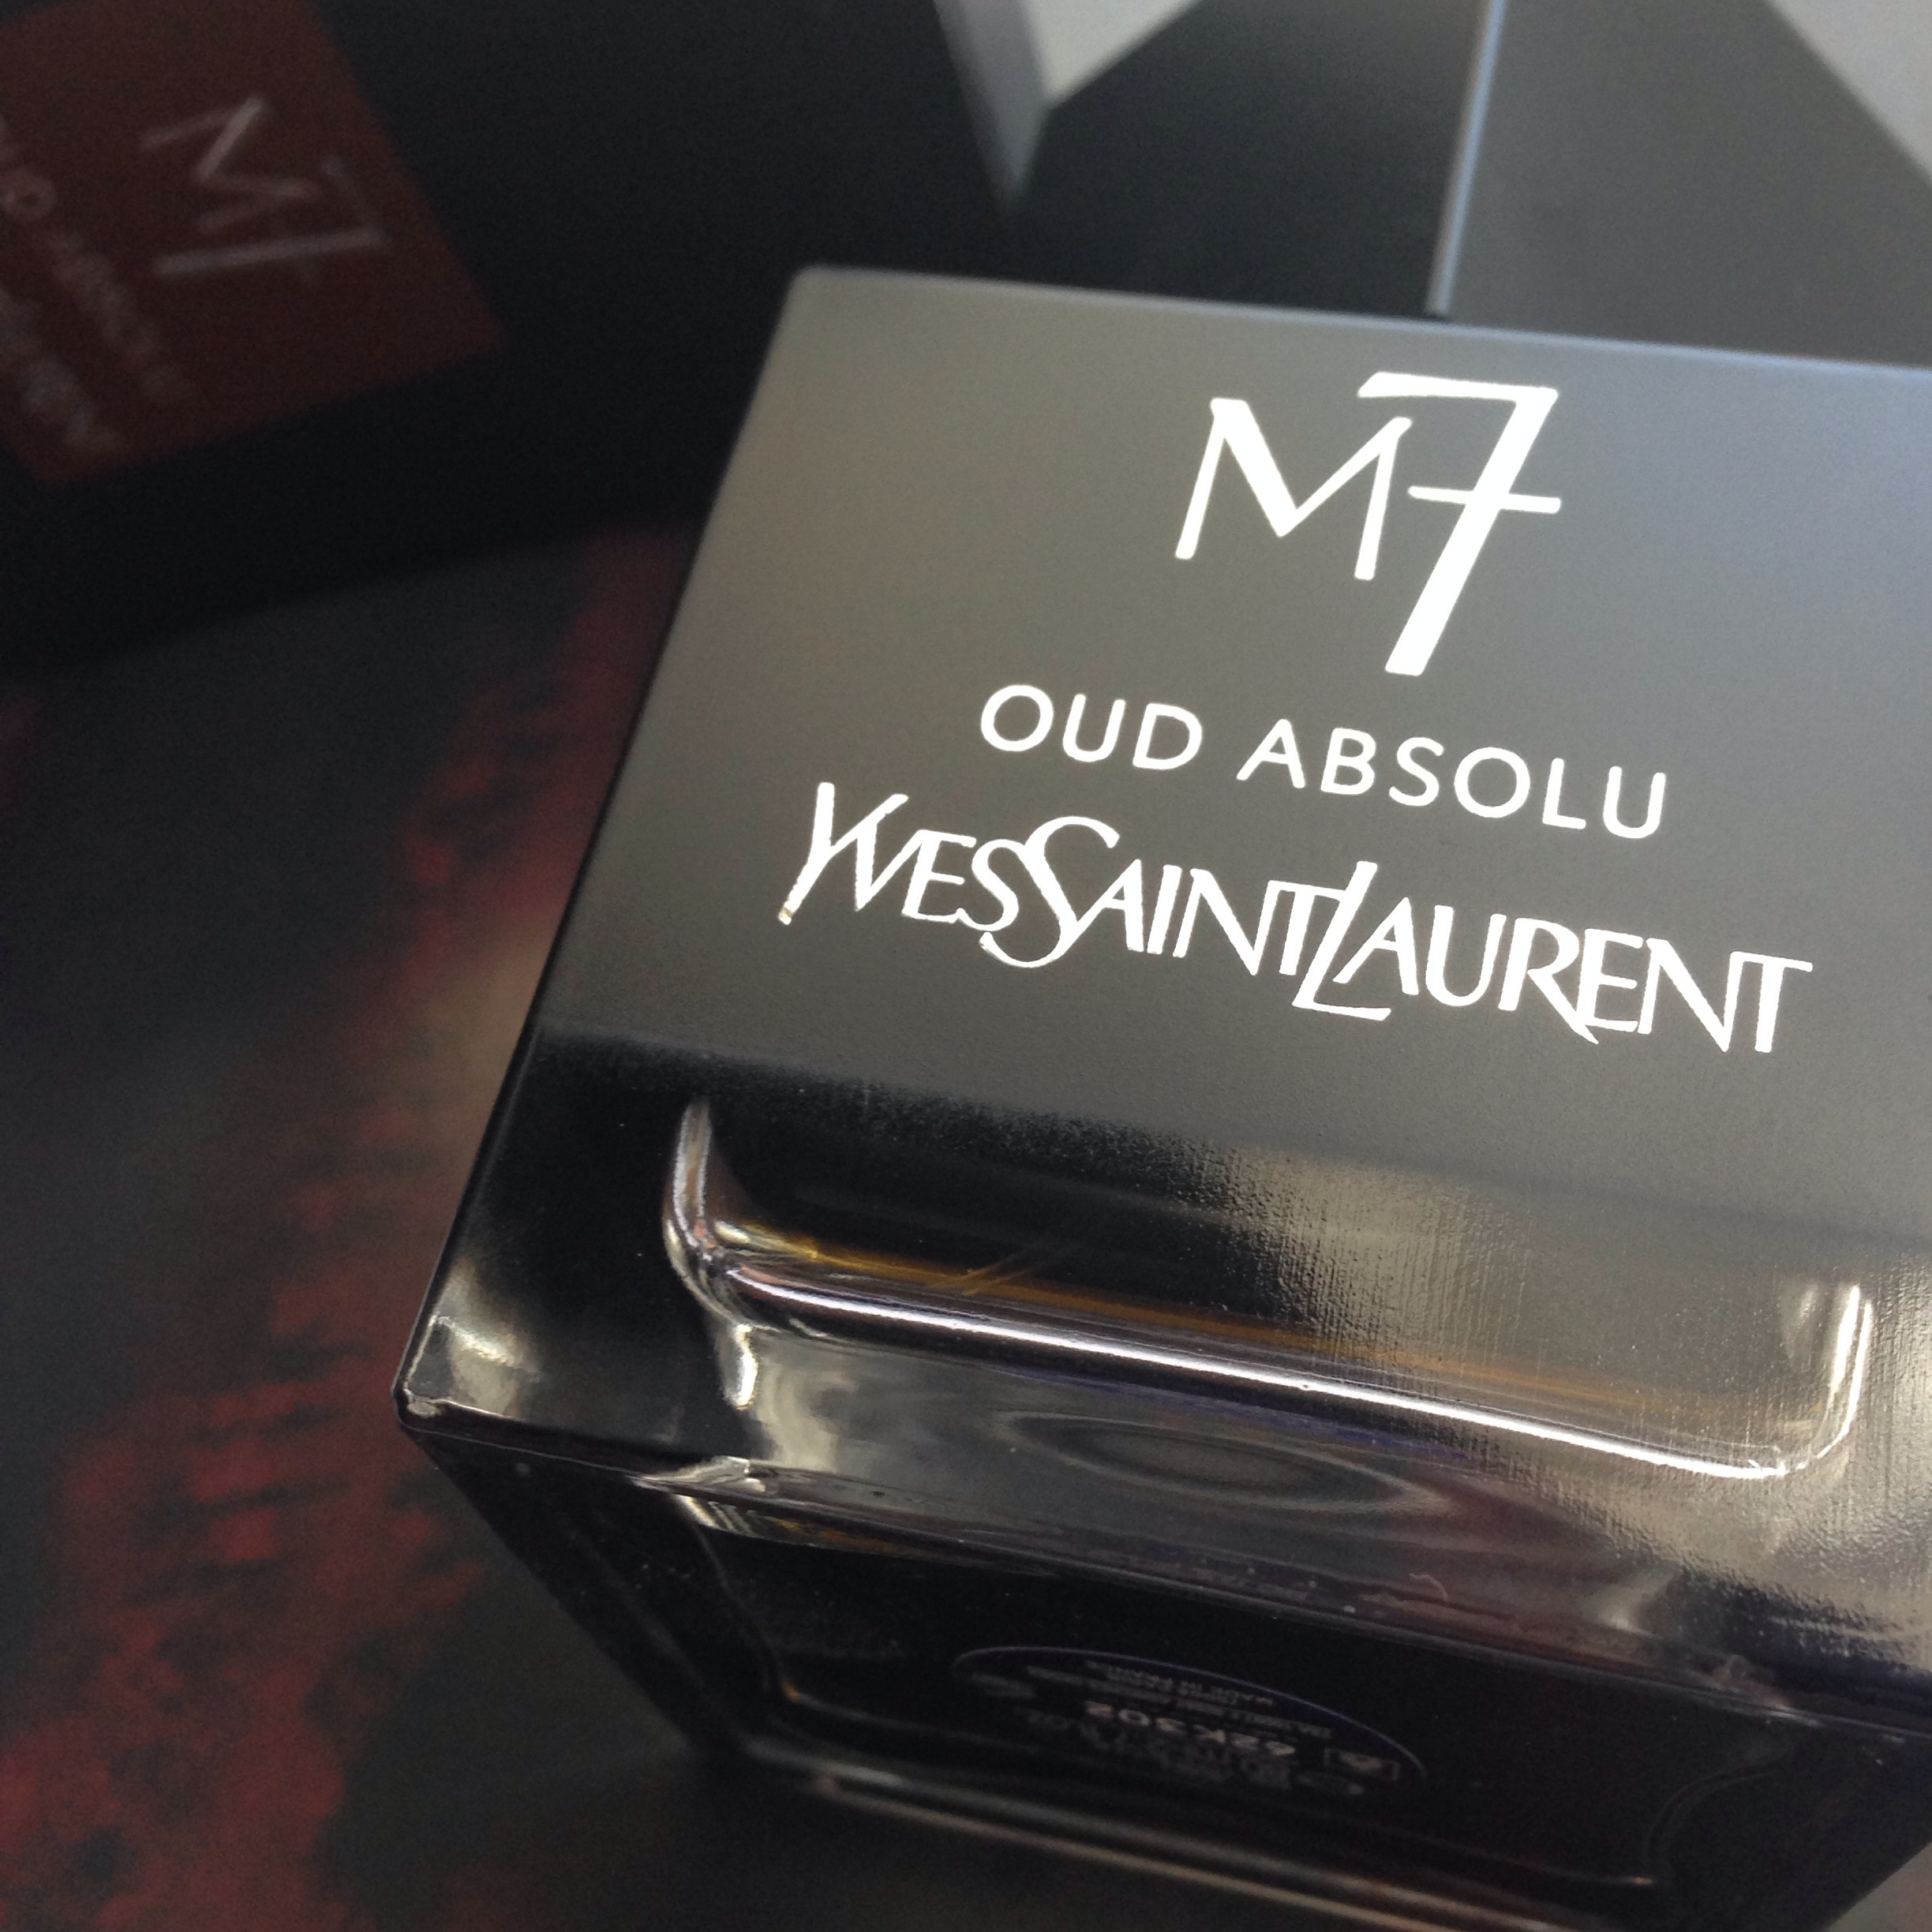 M7 Oud Absolu by Yves Saint Laurent